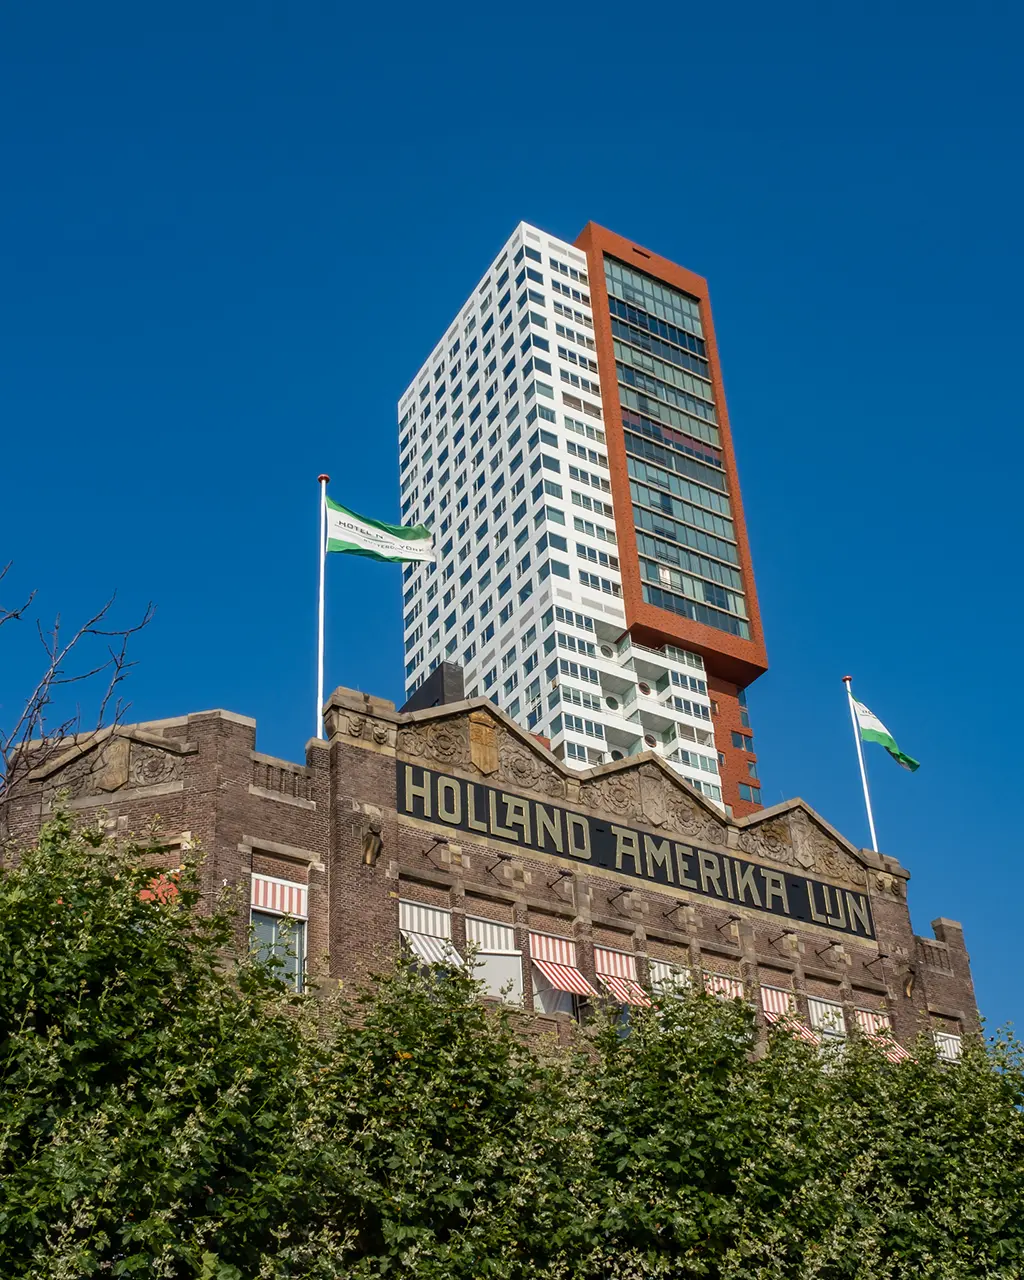 Les 22 endroits les plus instagrammables de Rotterdam